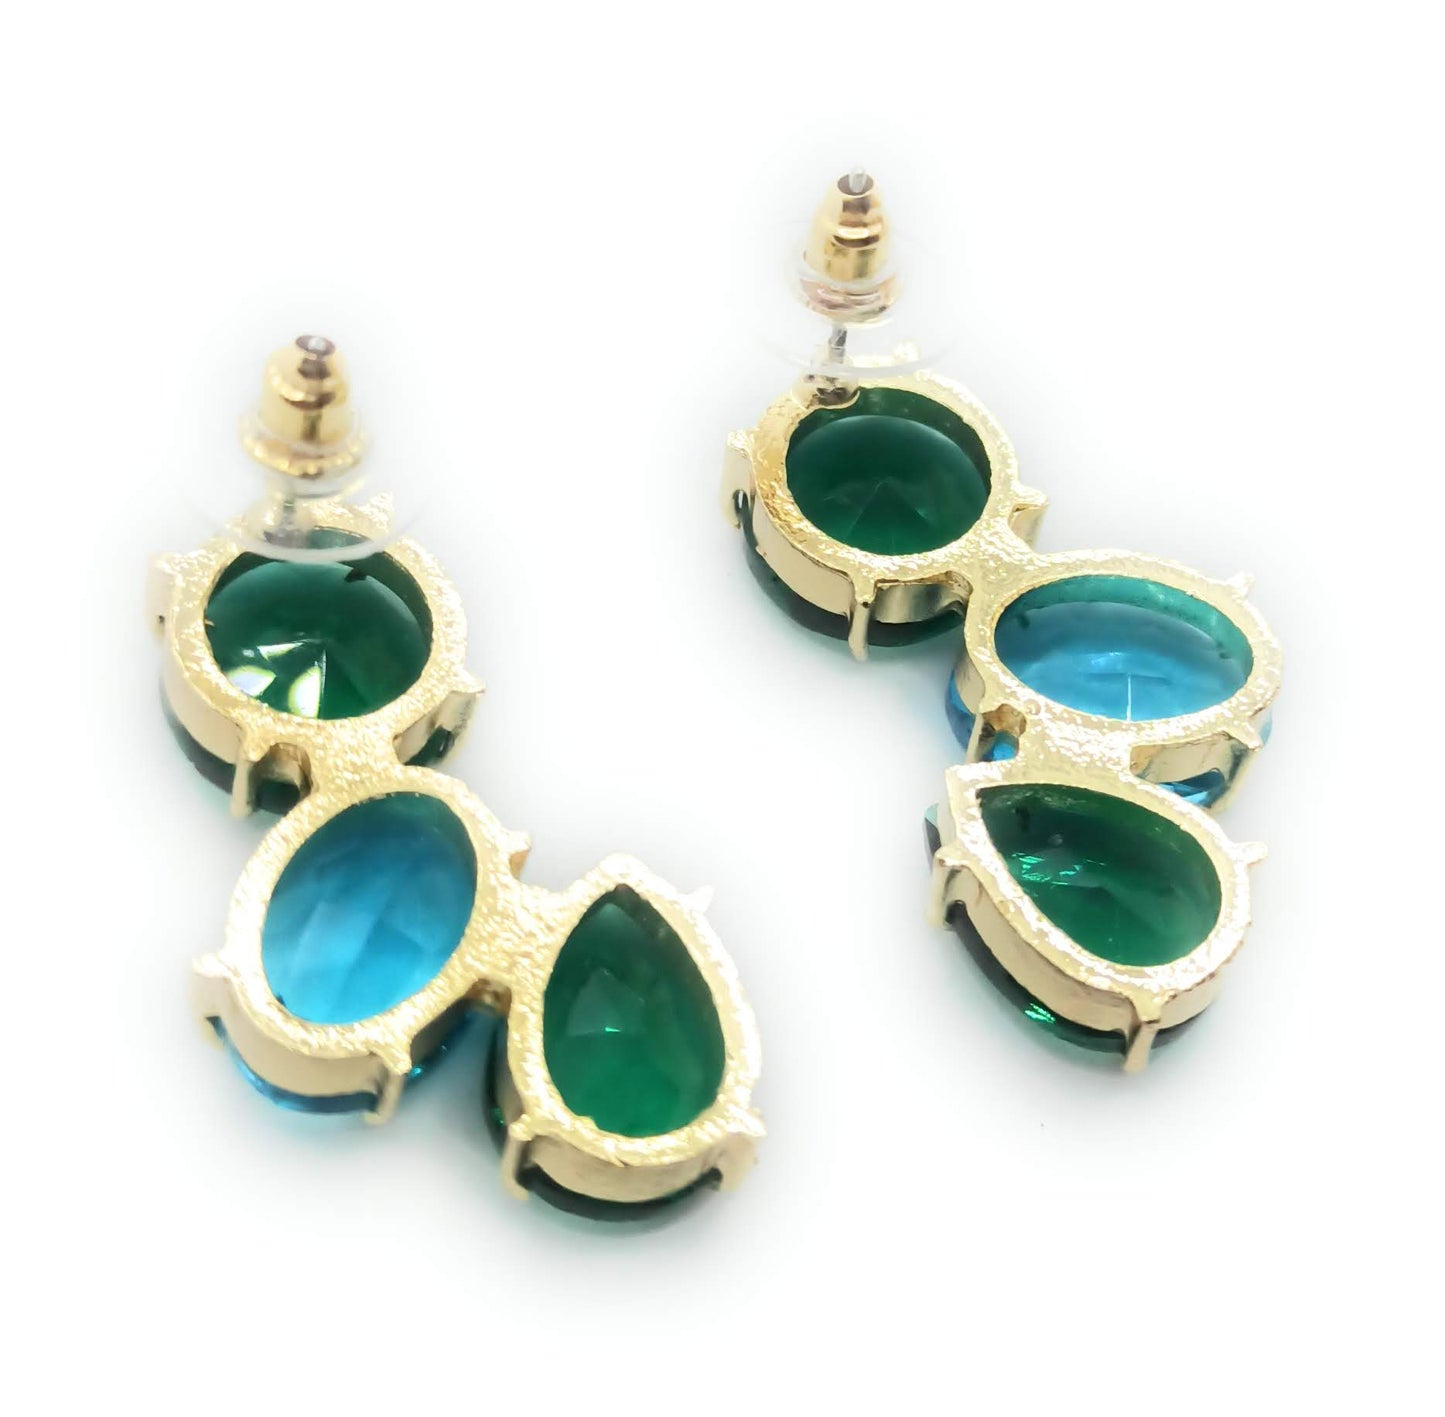 Pendientes Largos con Cristales de Colores · Verde Celeste Esmeralda